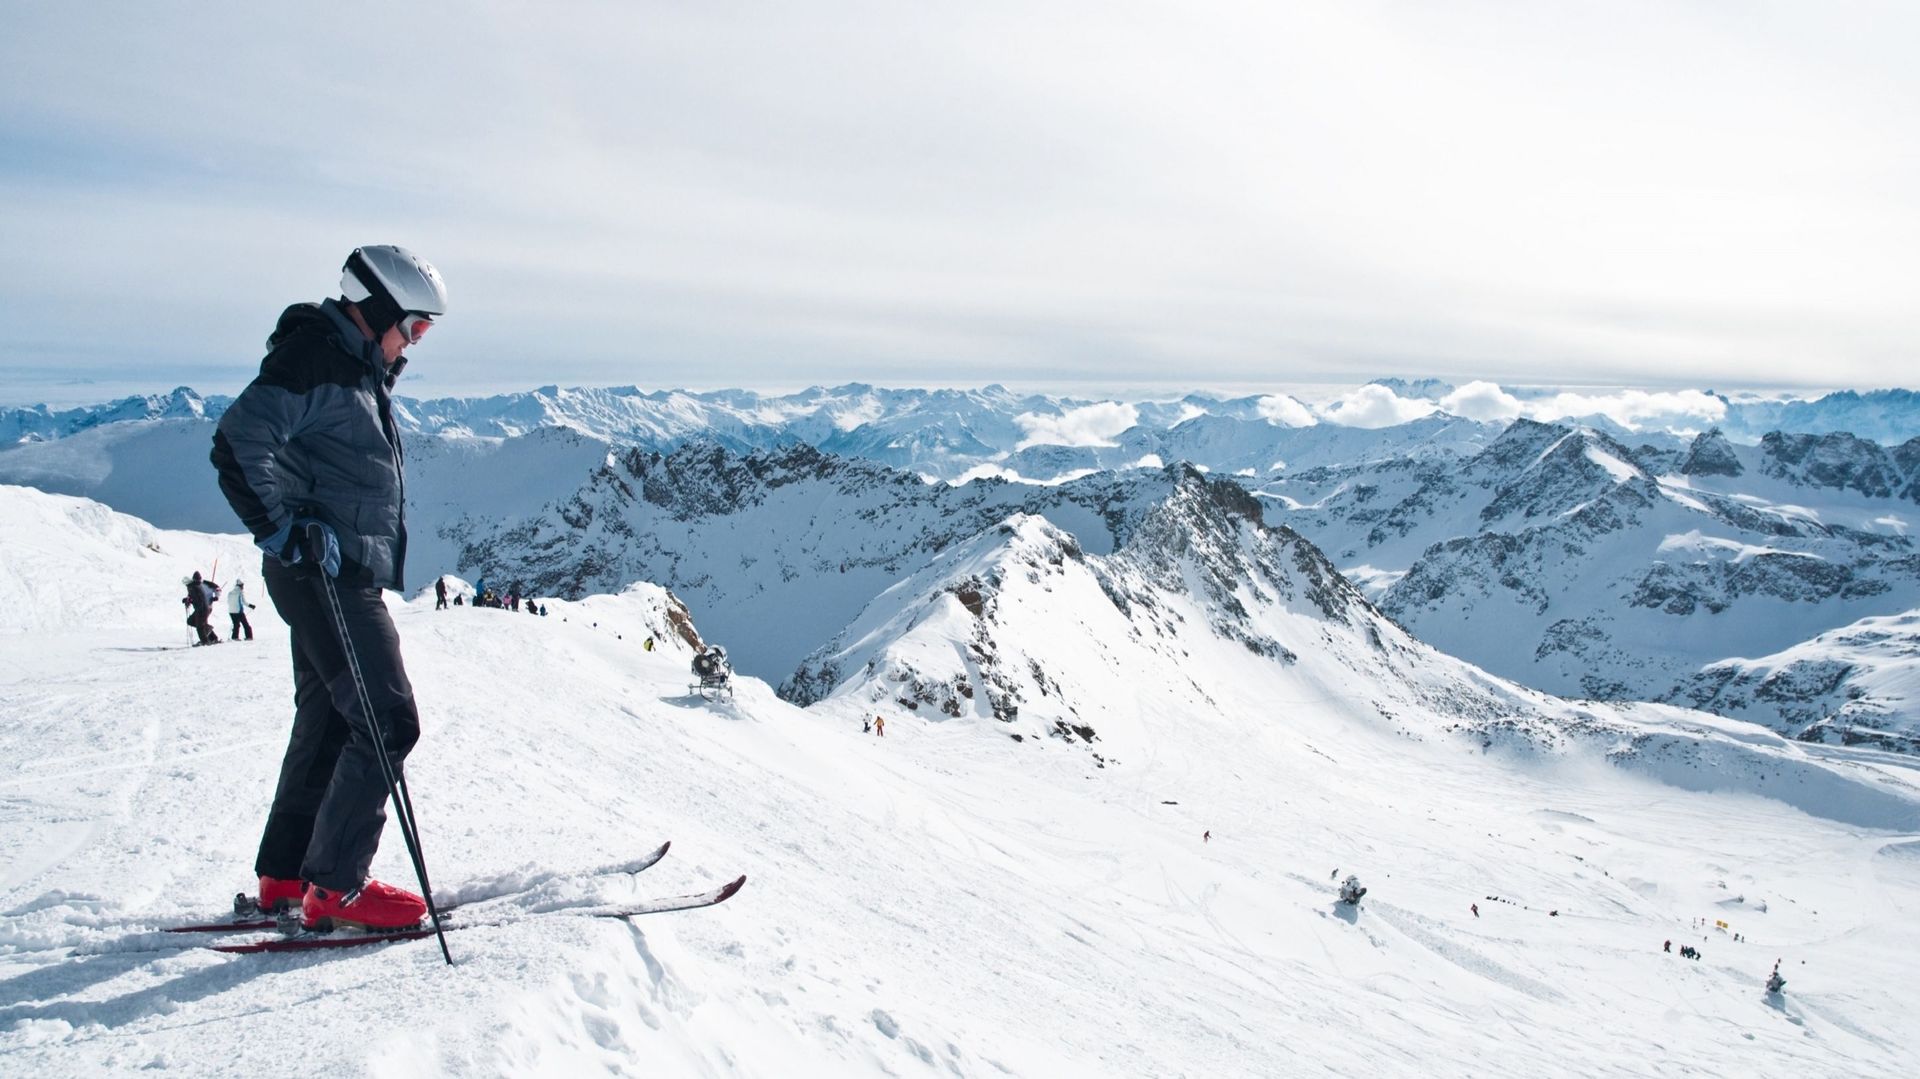 En France comme aux États-Unis, les stations de ski s'adaptent au changement climatique et repensent leurs offres pour s'assurer un avenir économique.